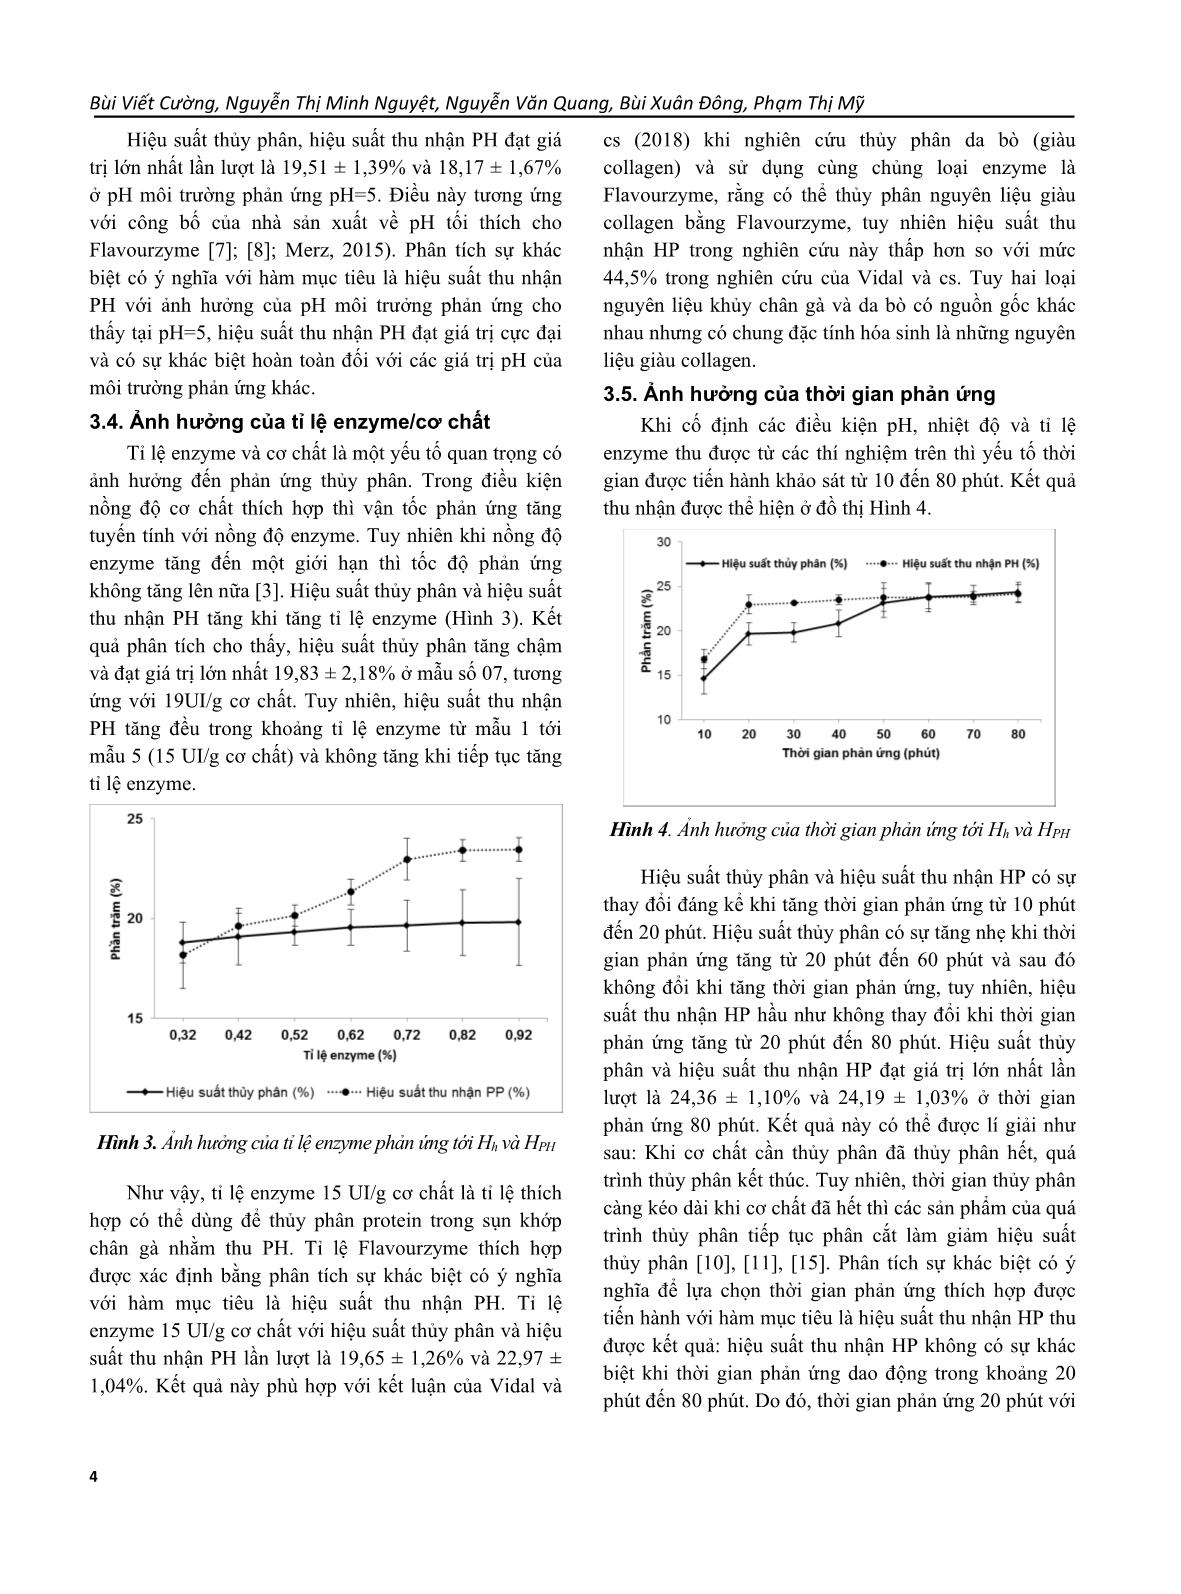 Nghiên cứu phản ứng thủy phân sụn khớp chân gà sử dụng Flavourzyme trang 4